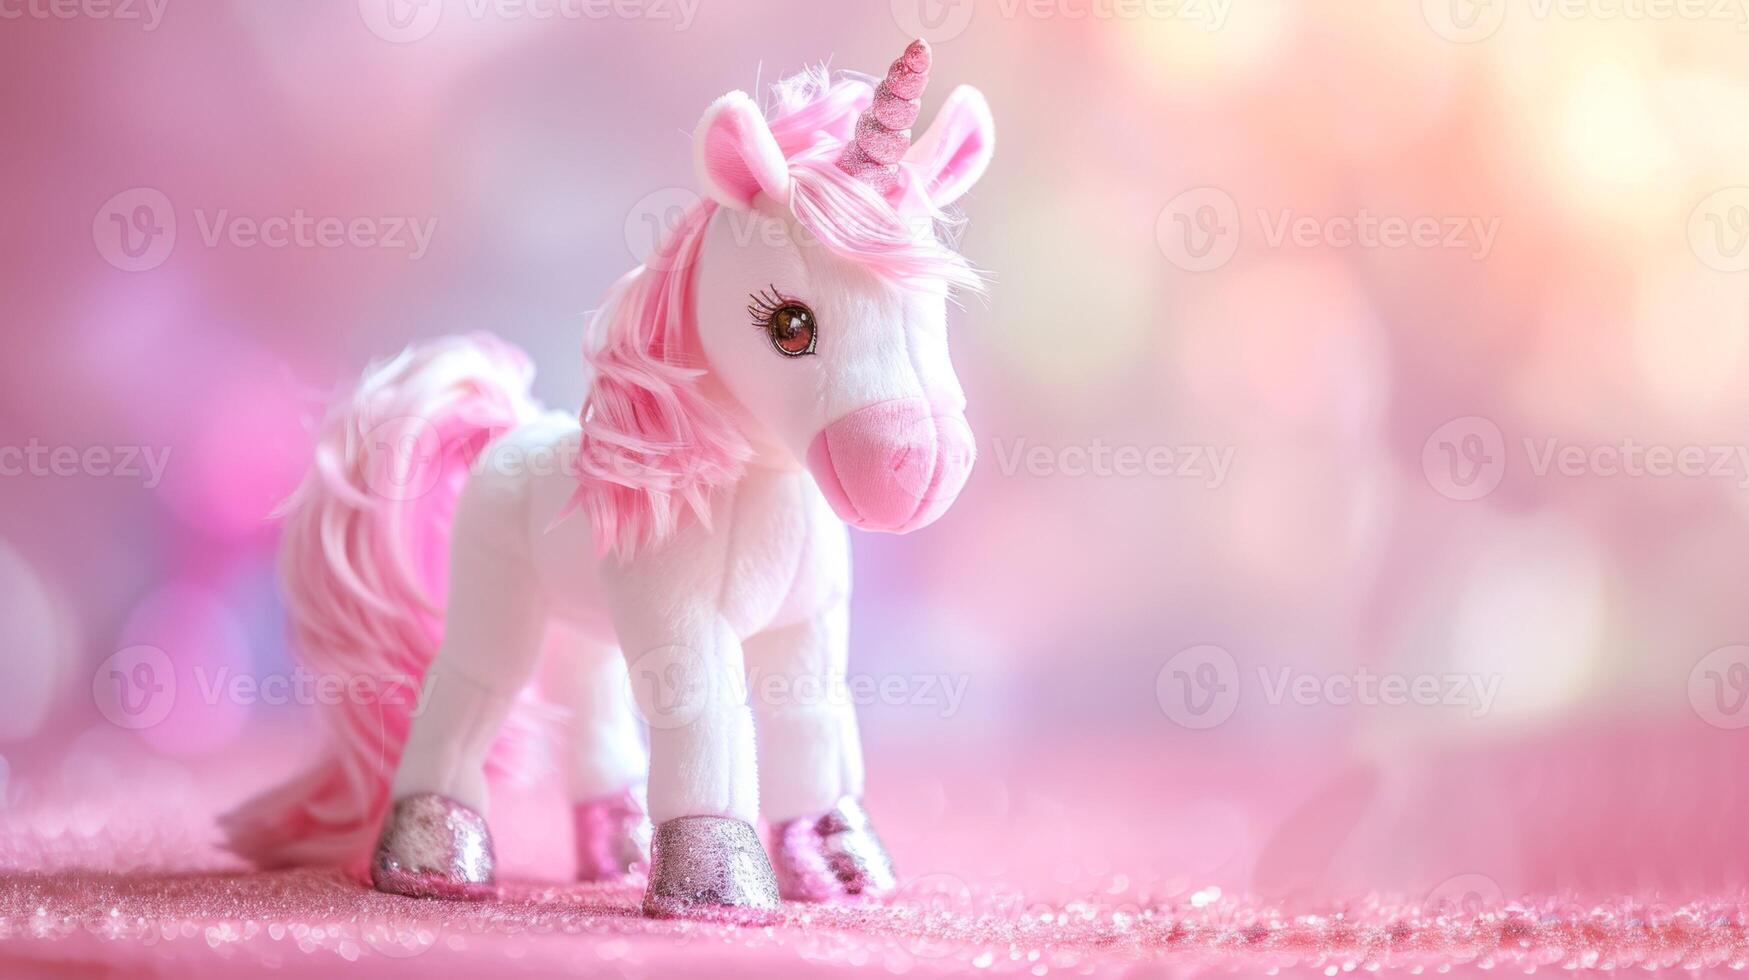 roze pluizig eenhoorn speelgoed- met schitteren en bokeh effect in een magisch kinderjaren fantasie opstelling foto